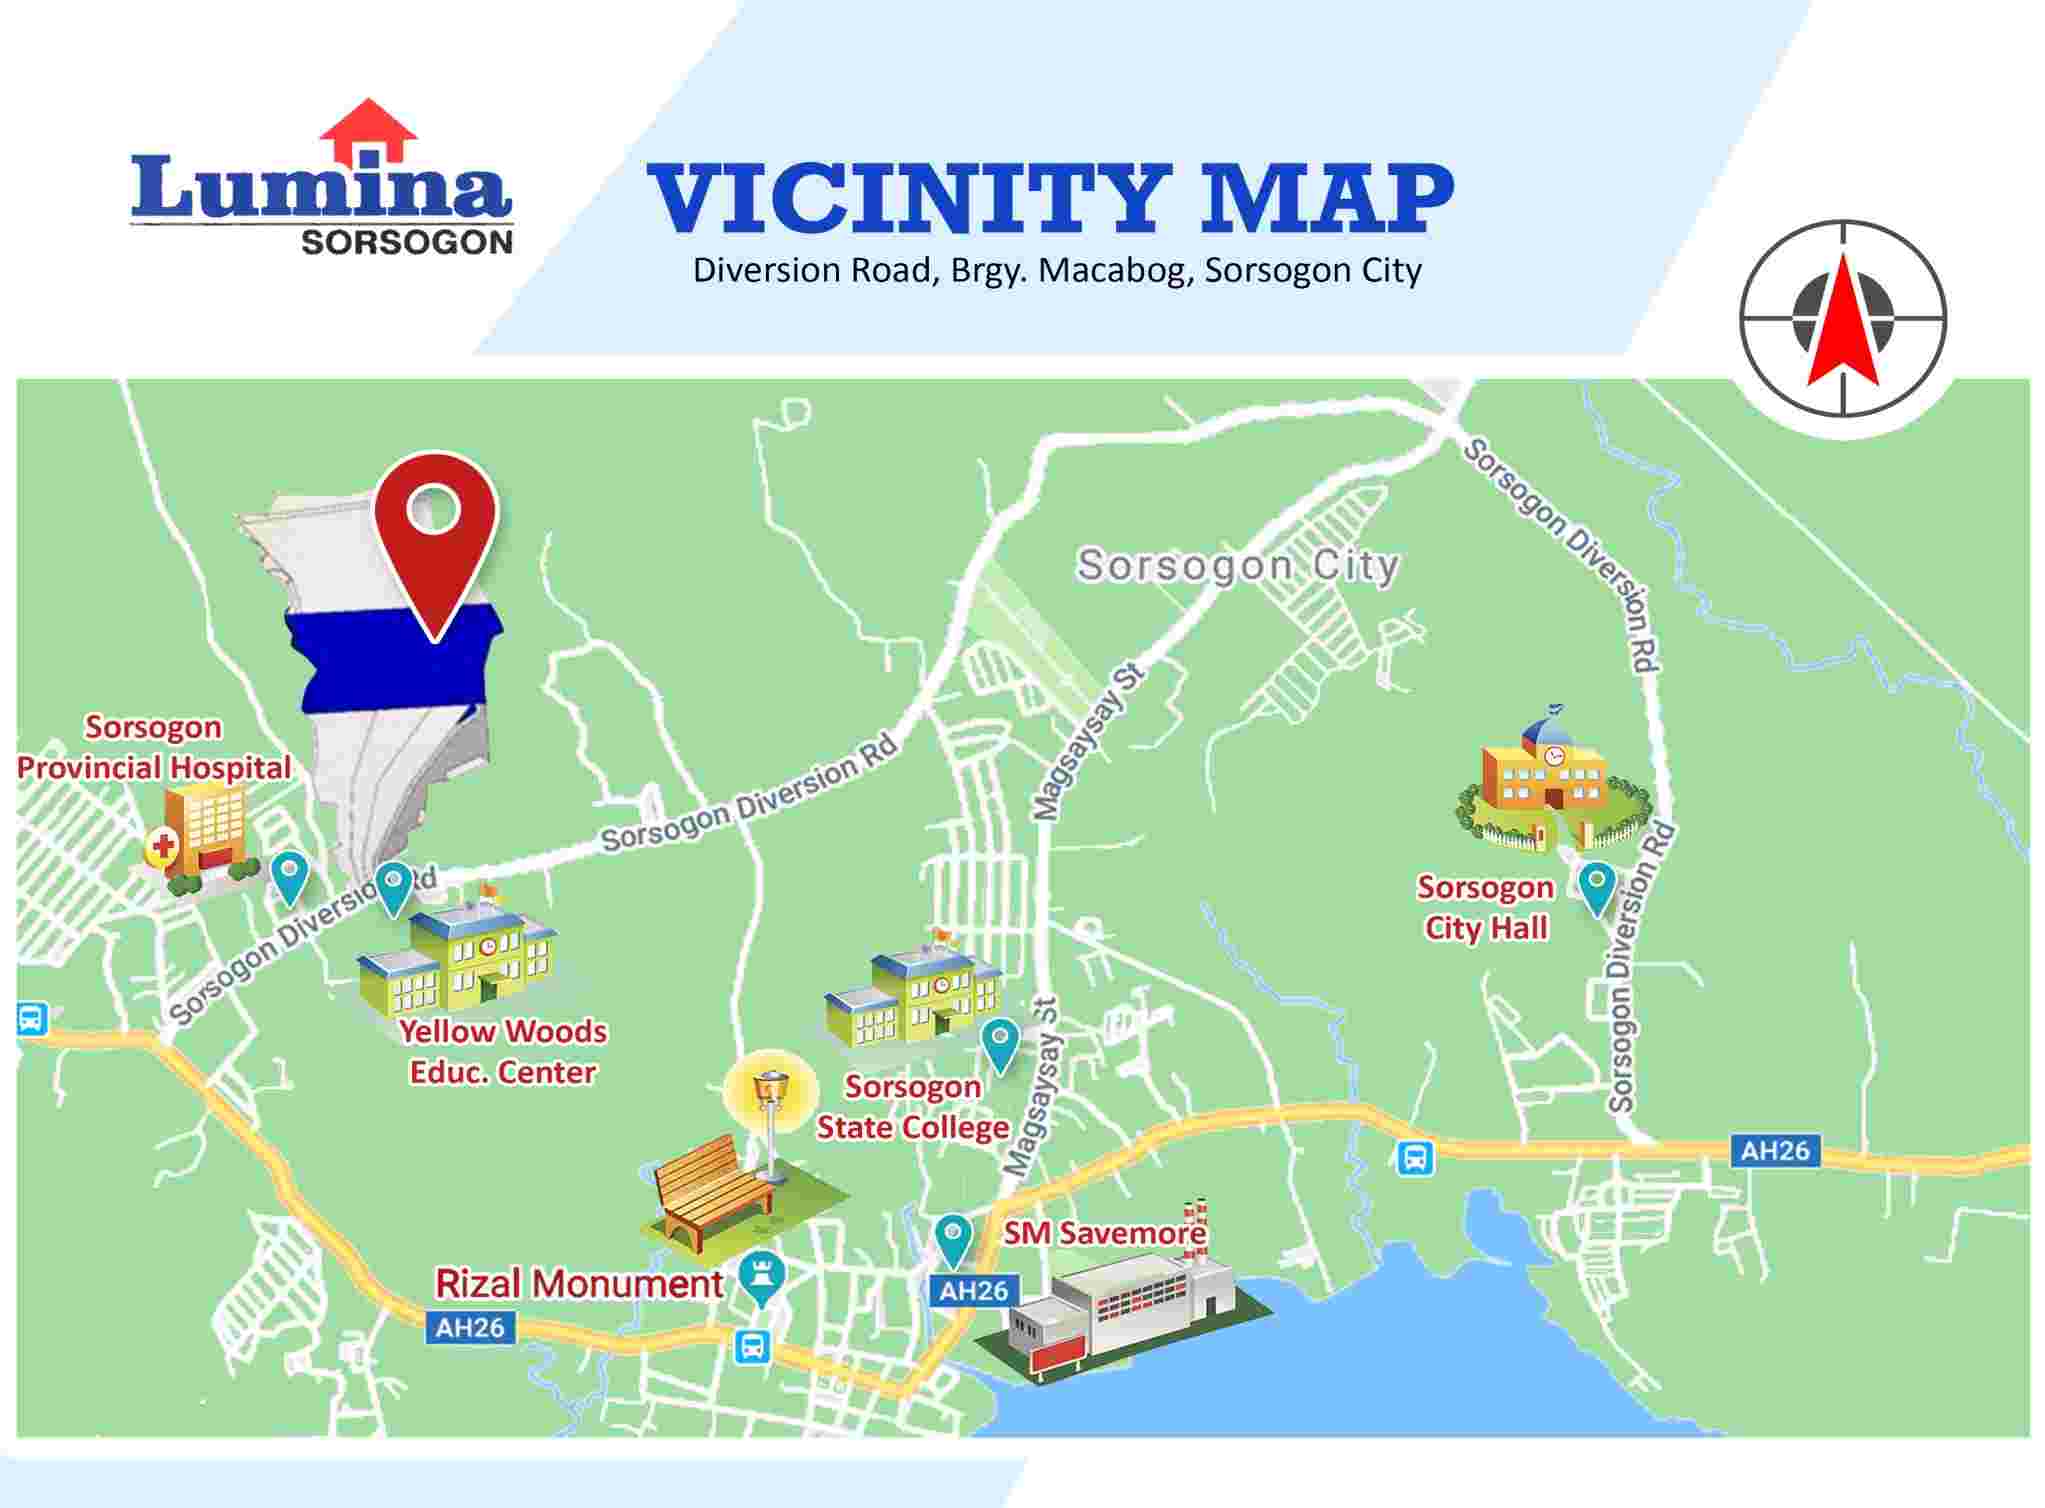 Vicinity-Map-1635999532.jpeg